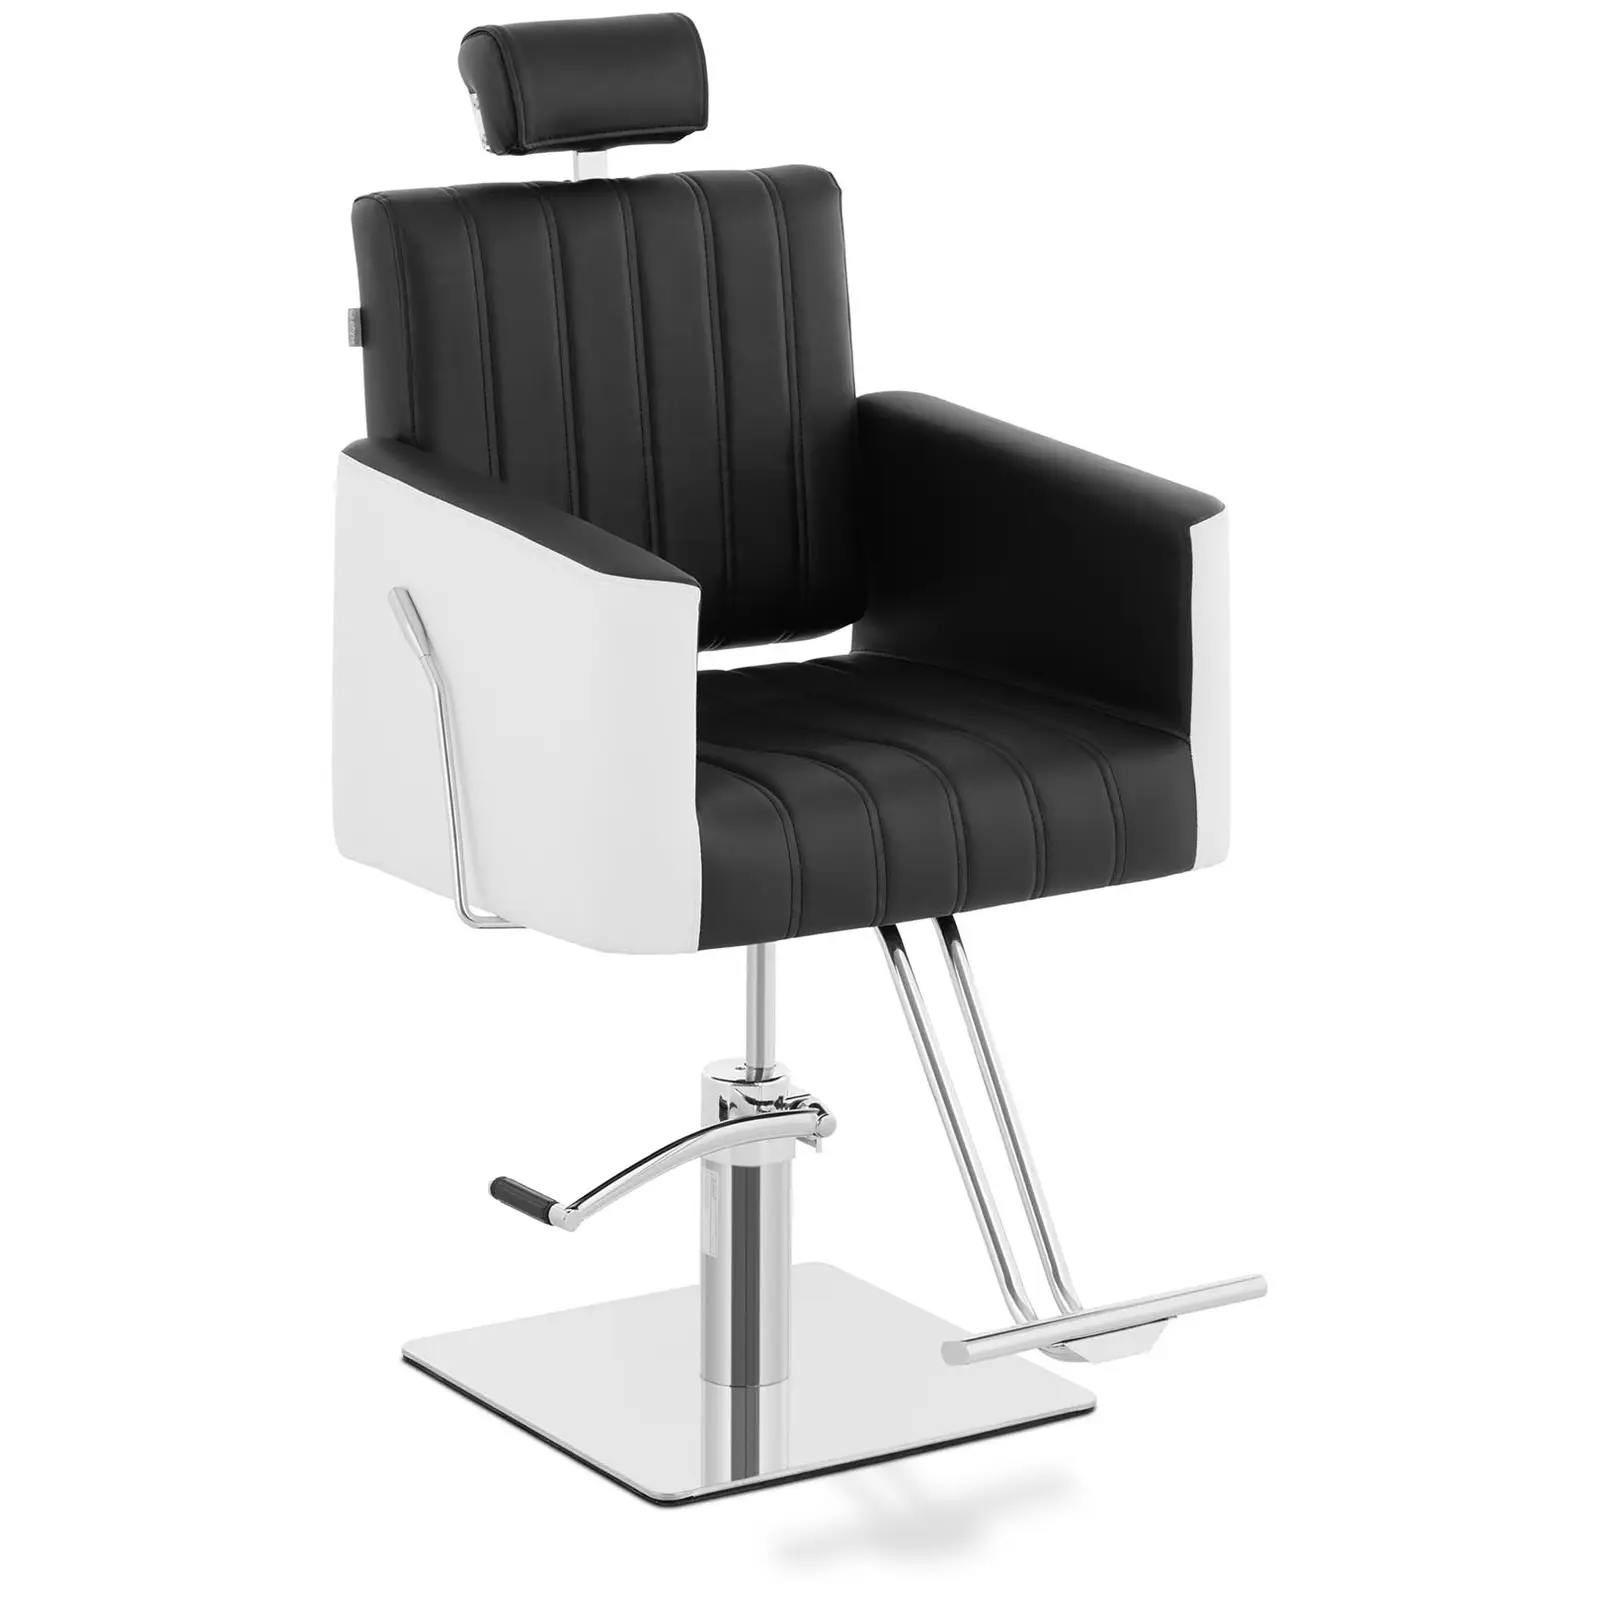 Styling stoel met voetensteun - 470x630 mm - 150 kg - Zwart, Wit